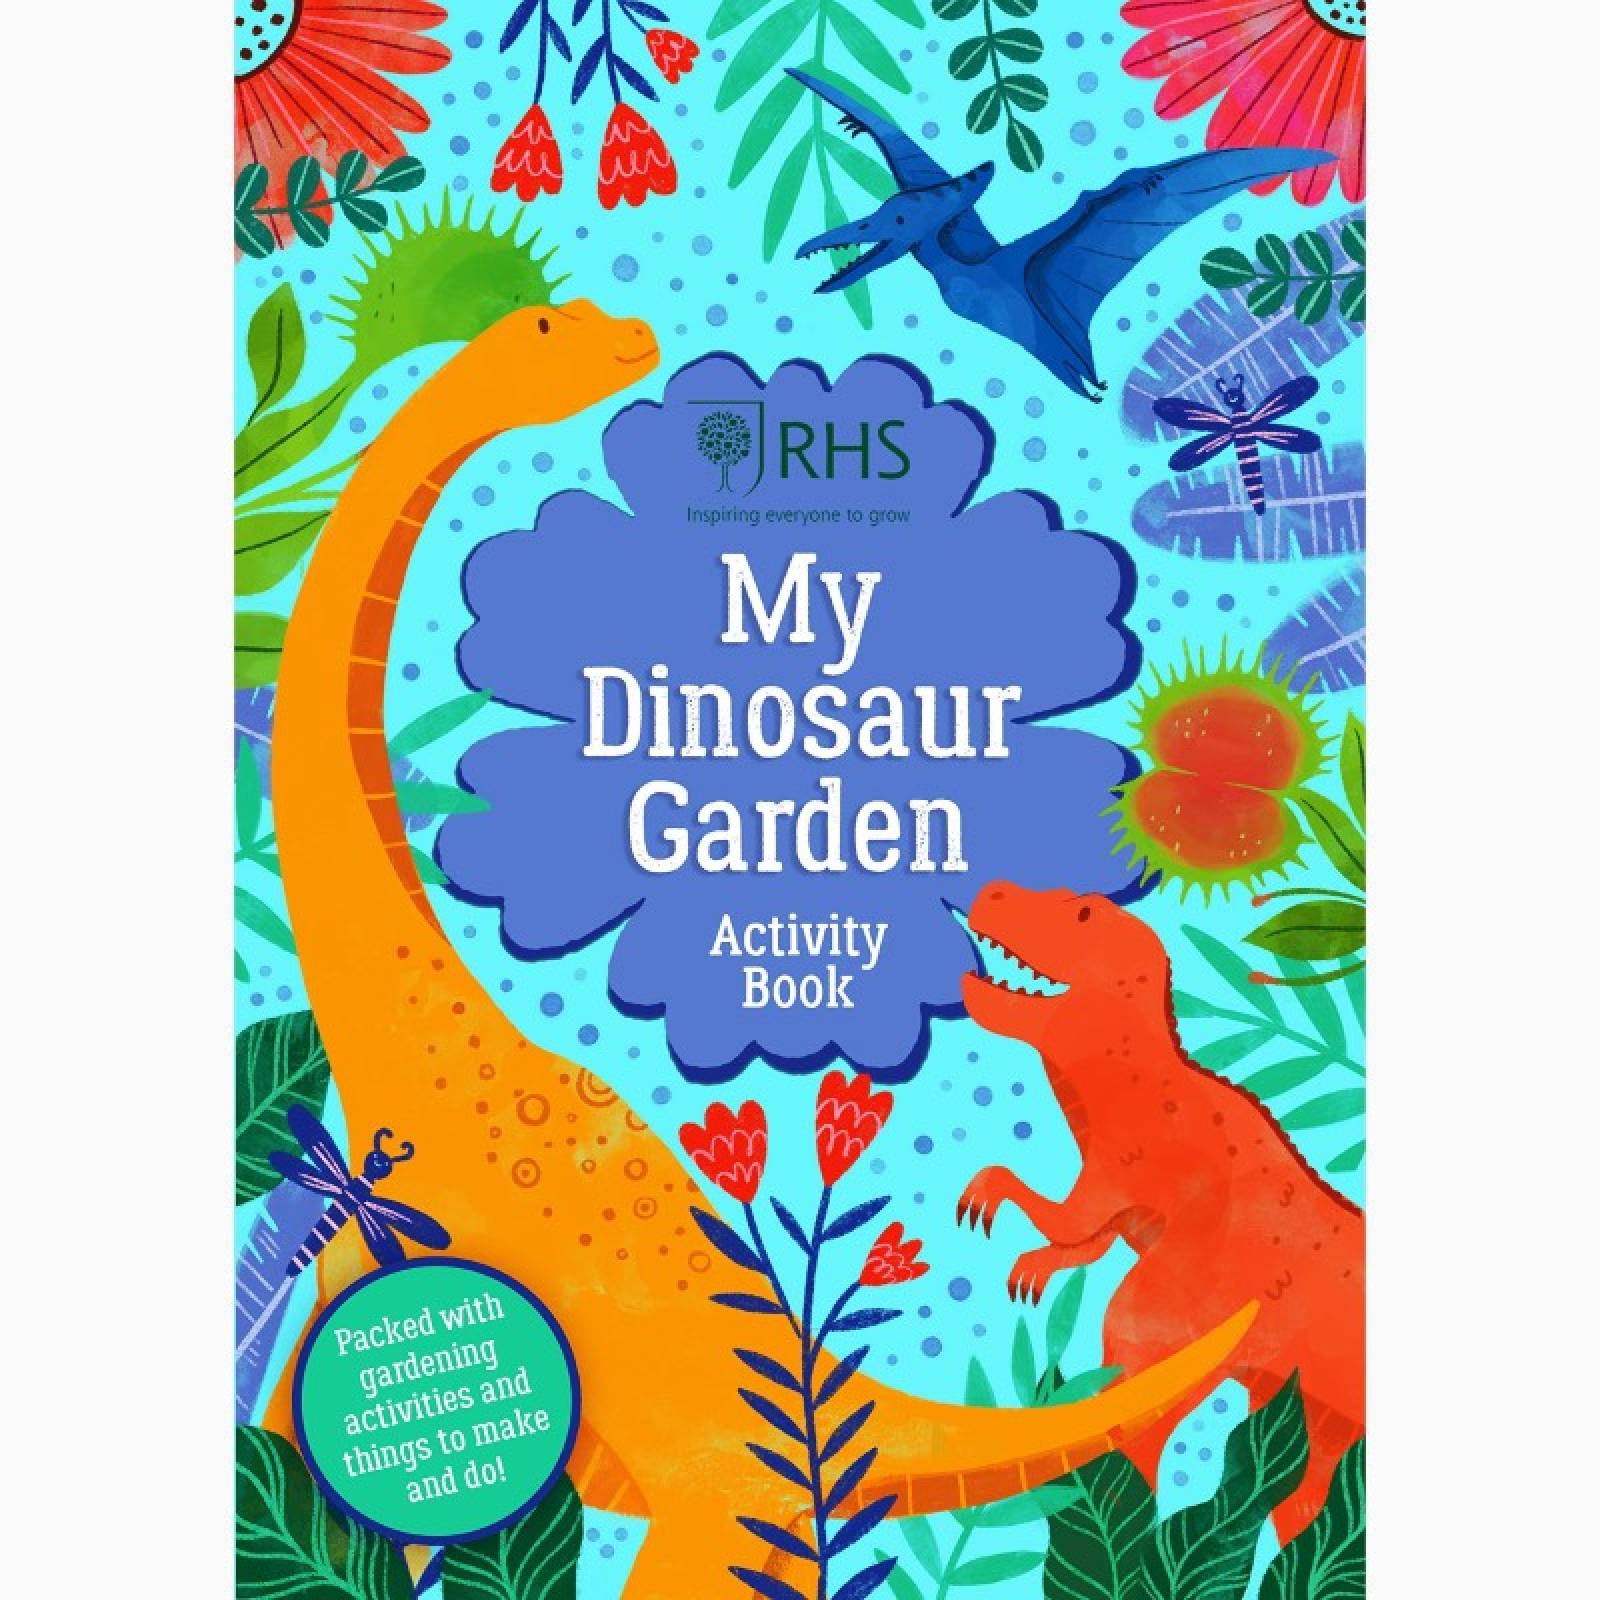 RHS My Dinosaur Garden Activity Book